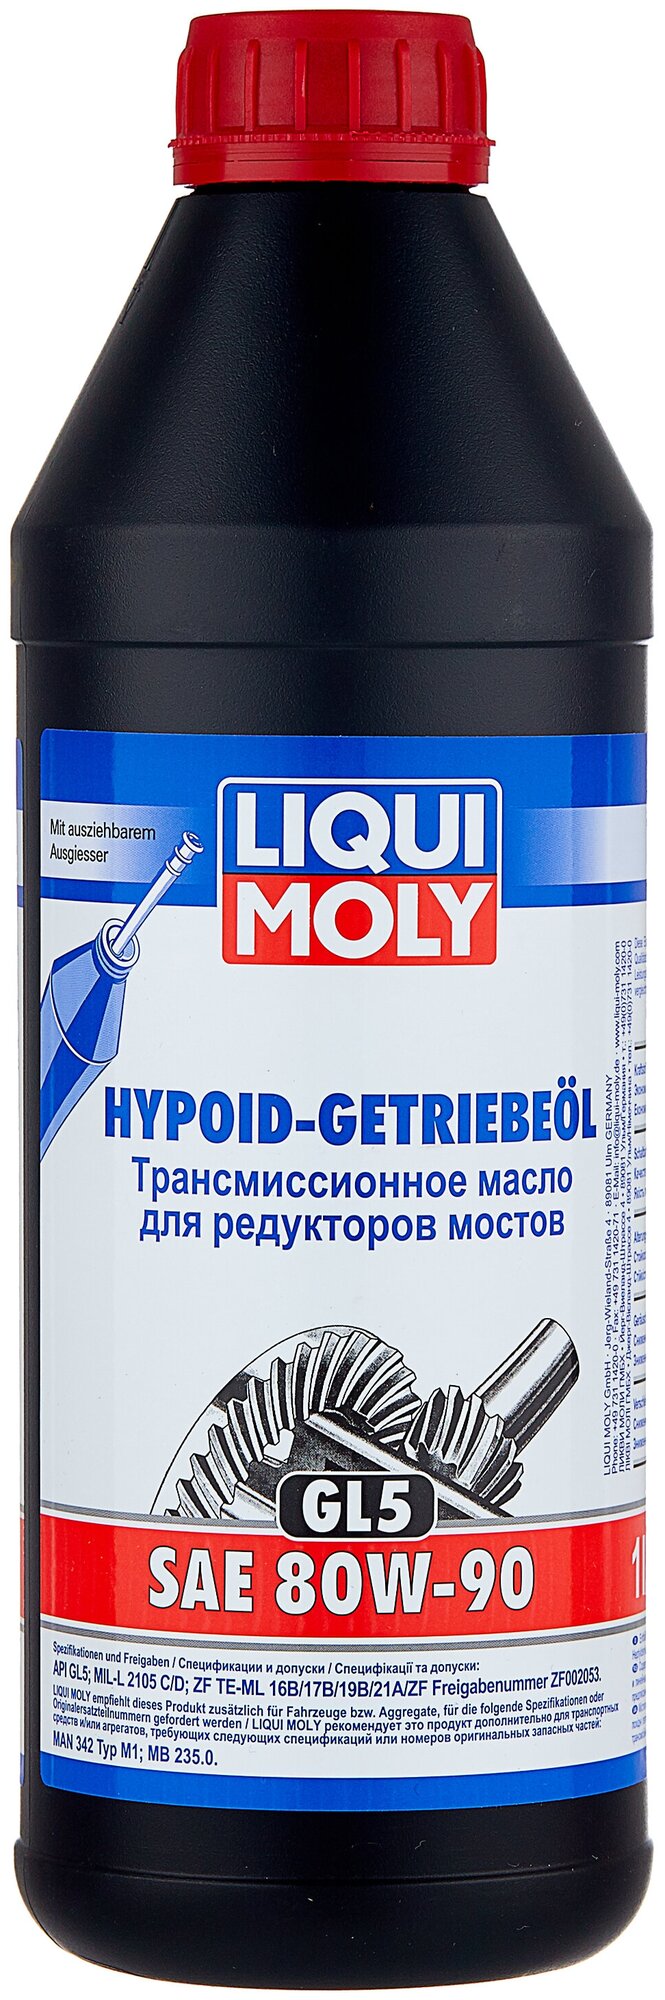 Масло трансмиссионное 80w90 liqui moly 1л минеральное hypoid-getriebeoil (gl-5), liqui moly, 4406